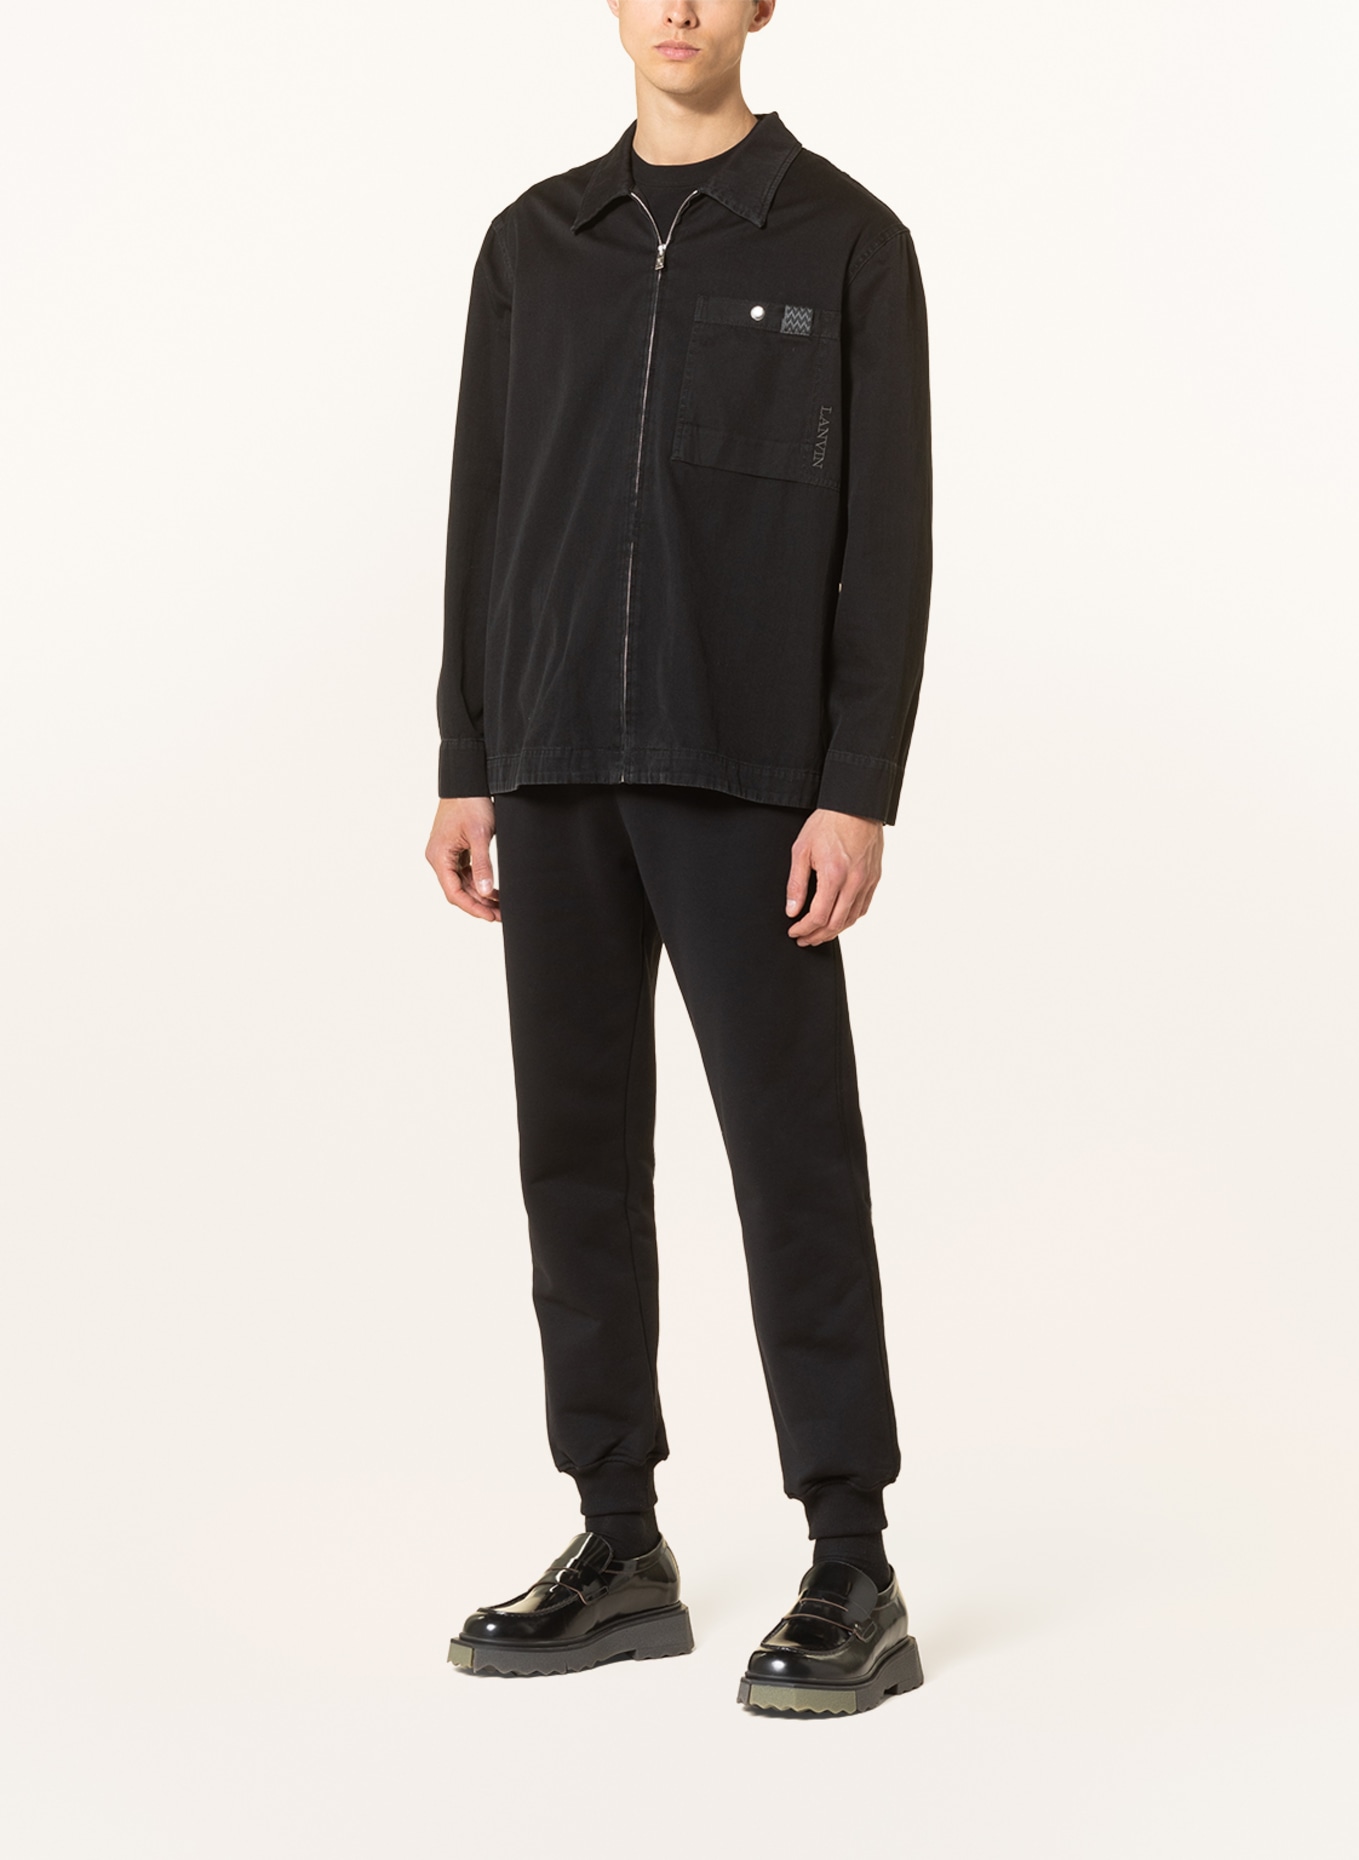 LANVIN Denim overshirt, Color: BLACK (Image 2)